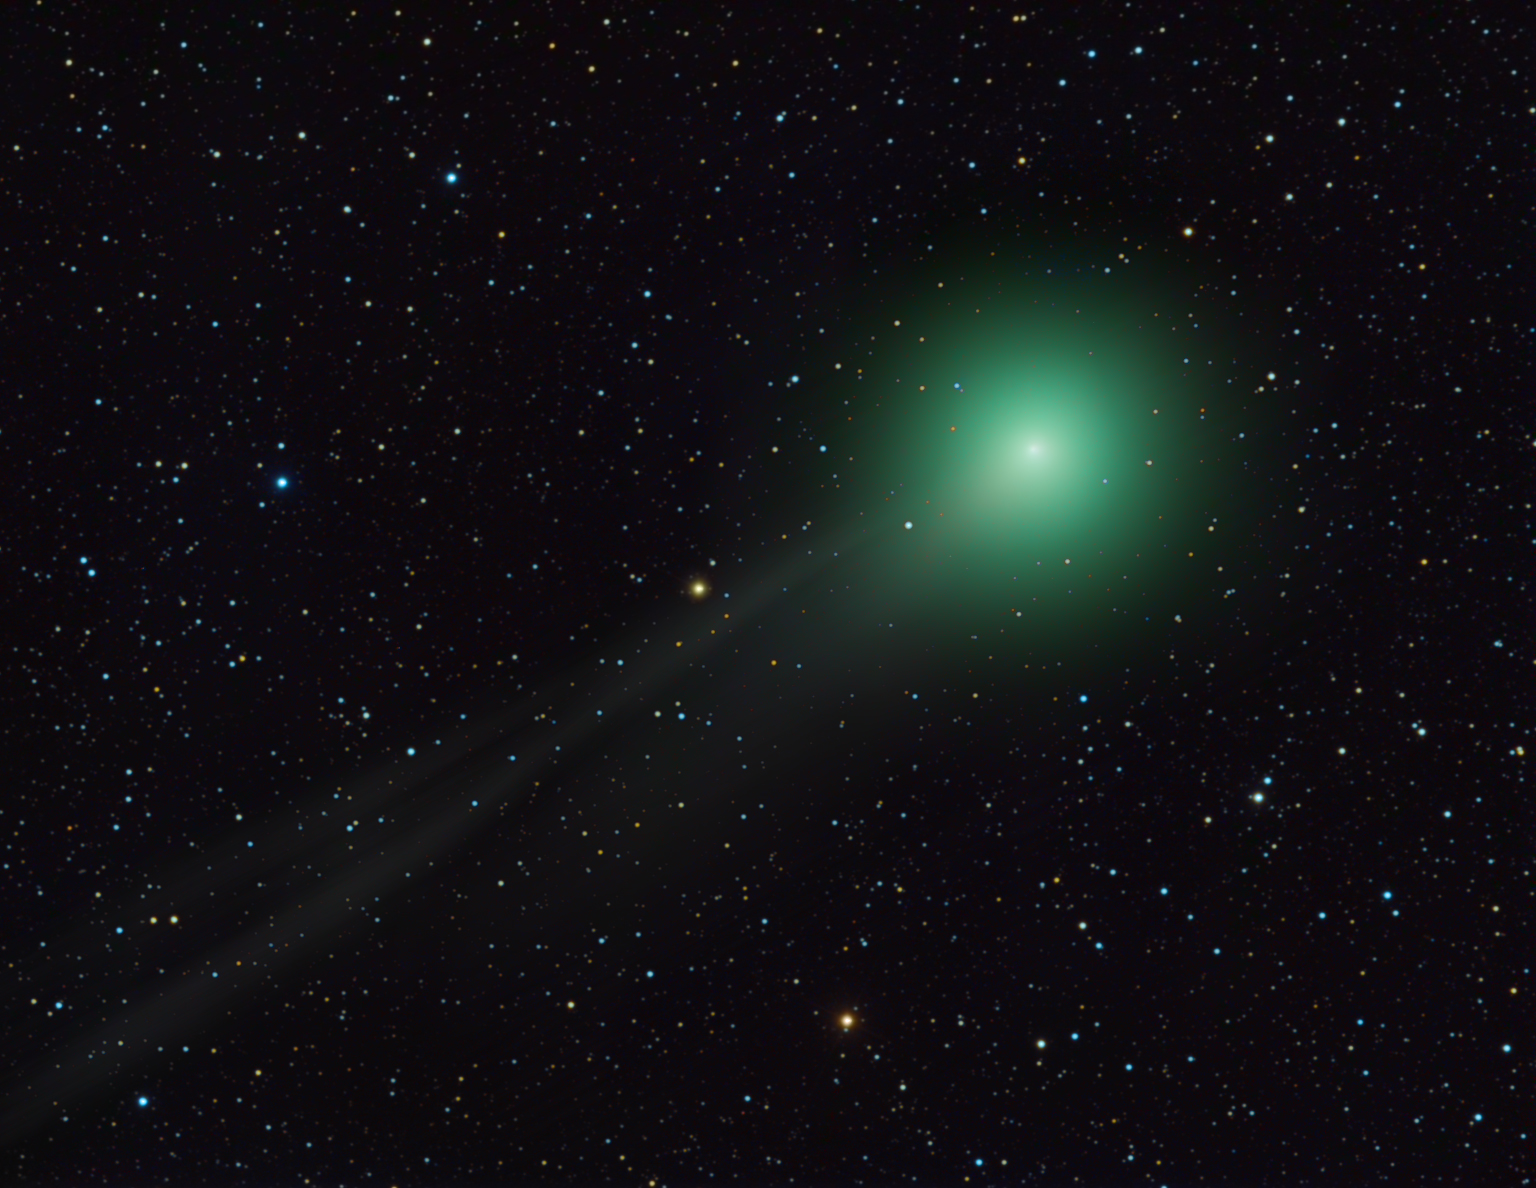 Komet Lemmon fotografert av amatørastronomen Rolf Wahl Olsen på New Zealand 28. januar 2013. Kometen har fått en flott hale, men vil tilta sterkt i lysstyrke utover våren. Foto: Rolf Wahl Olsen